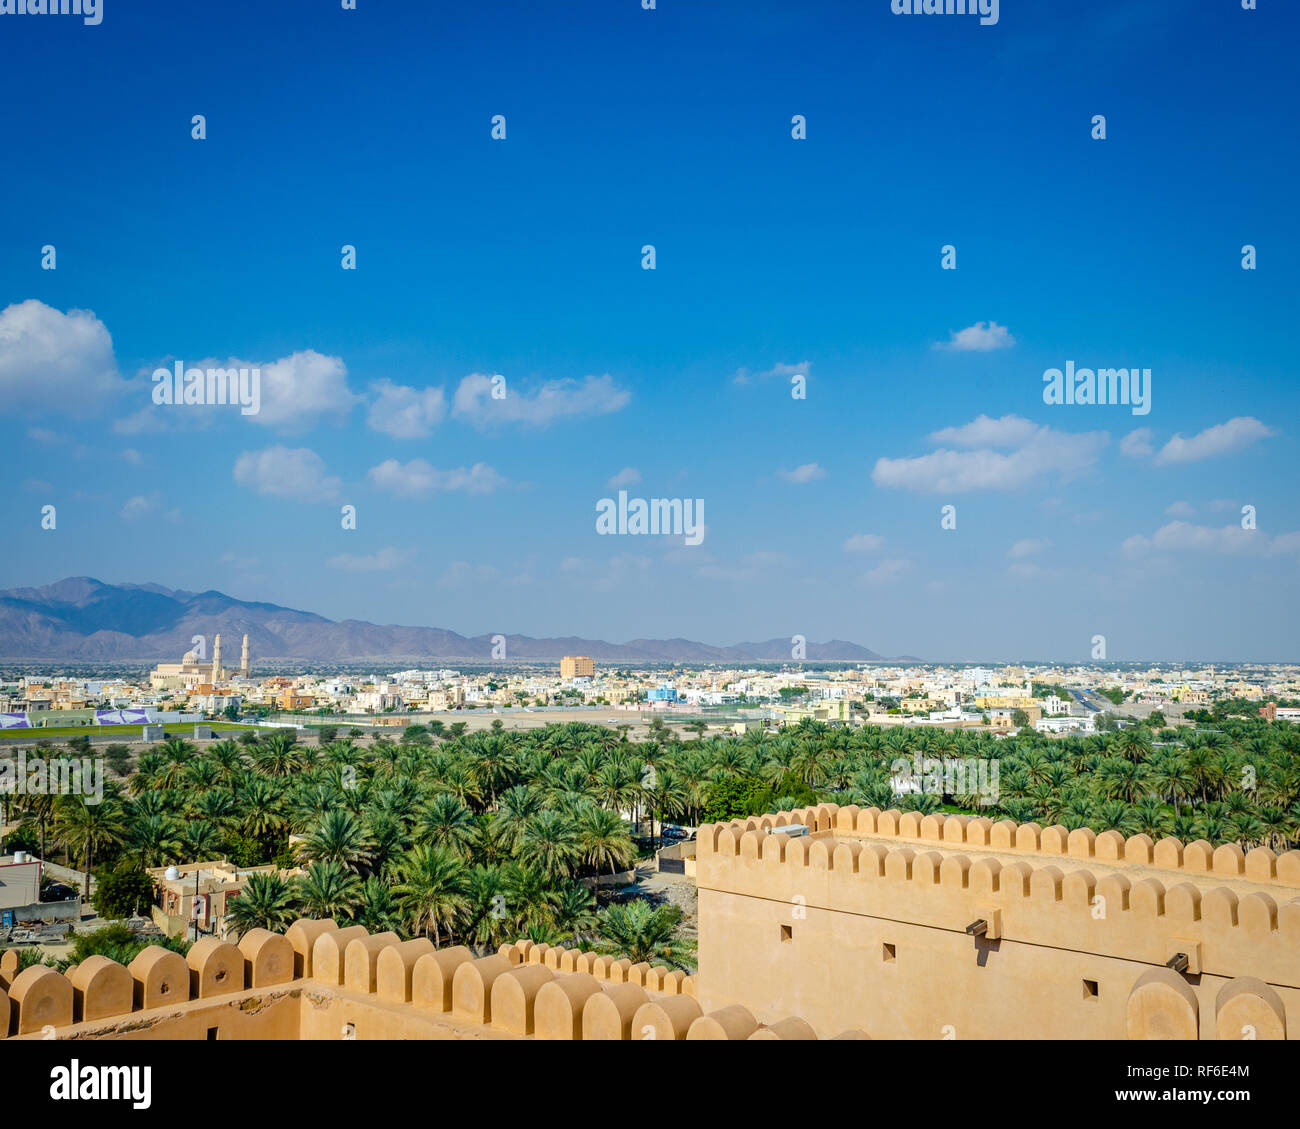 Oase in der Wüste, Barka Township und die Berge in der Ferne gesehen von der Terrasse der Nakhal Fort, Muscat, Oman. Stockfoto